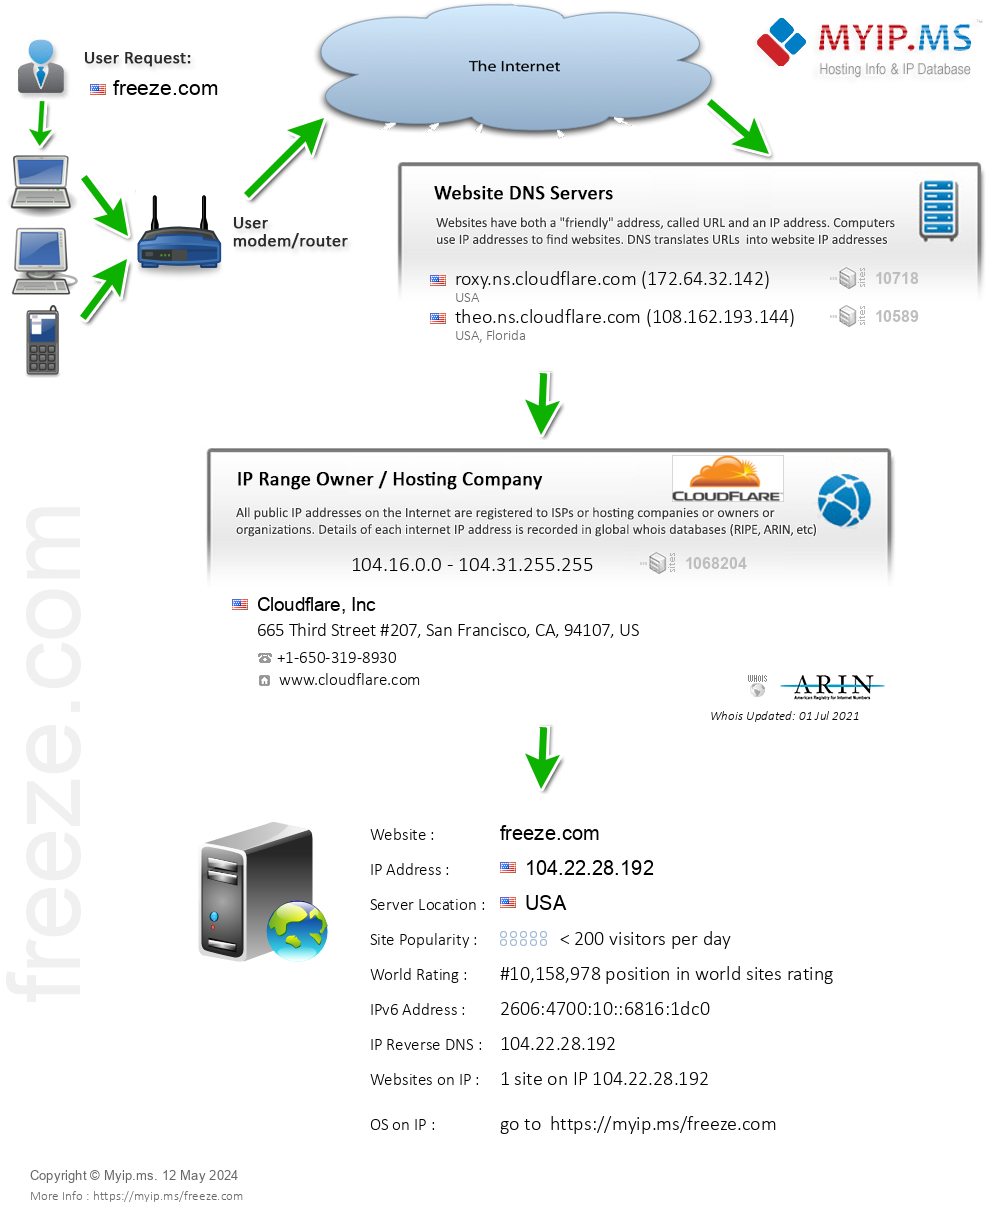 Freeze.com - Website Hosting Visual IP Diagram